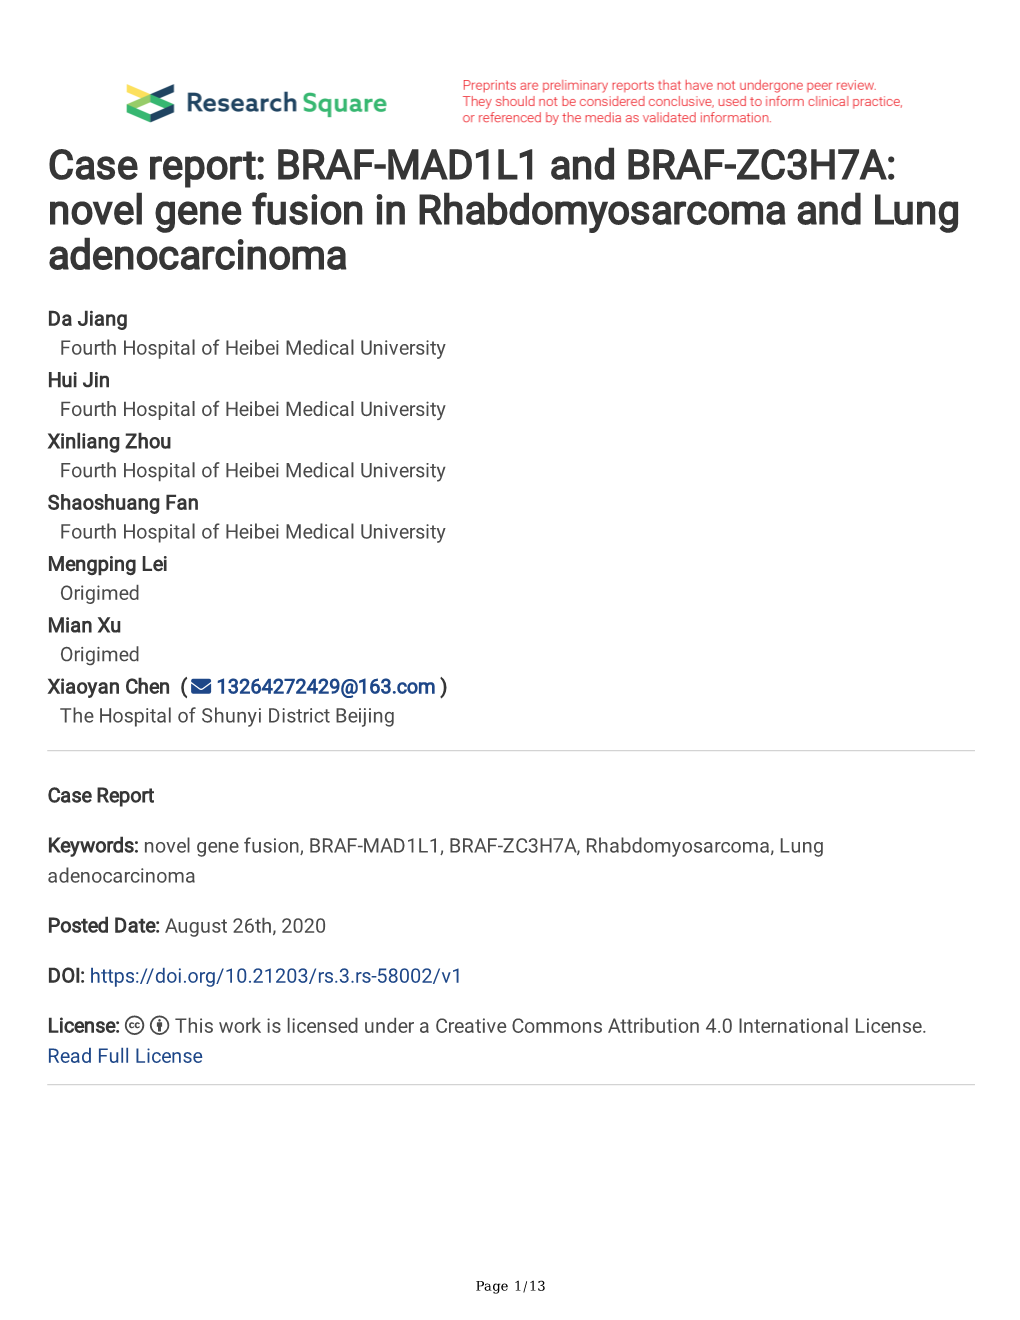 BRAF-MAD1L1 and BRAF-ZC3H7A: Novel Gene Fusion in Rhabdomyosarcoma and Lung Adenocarcinoma